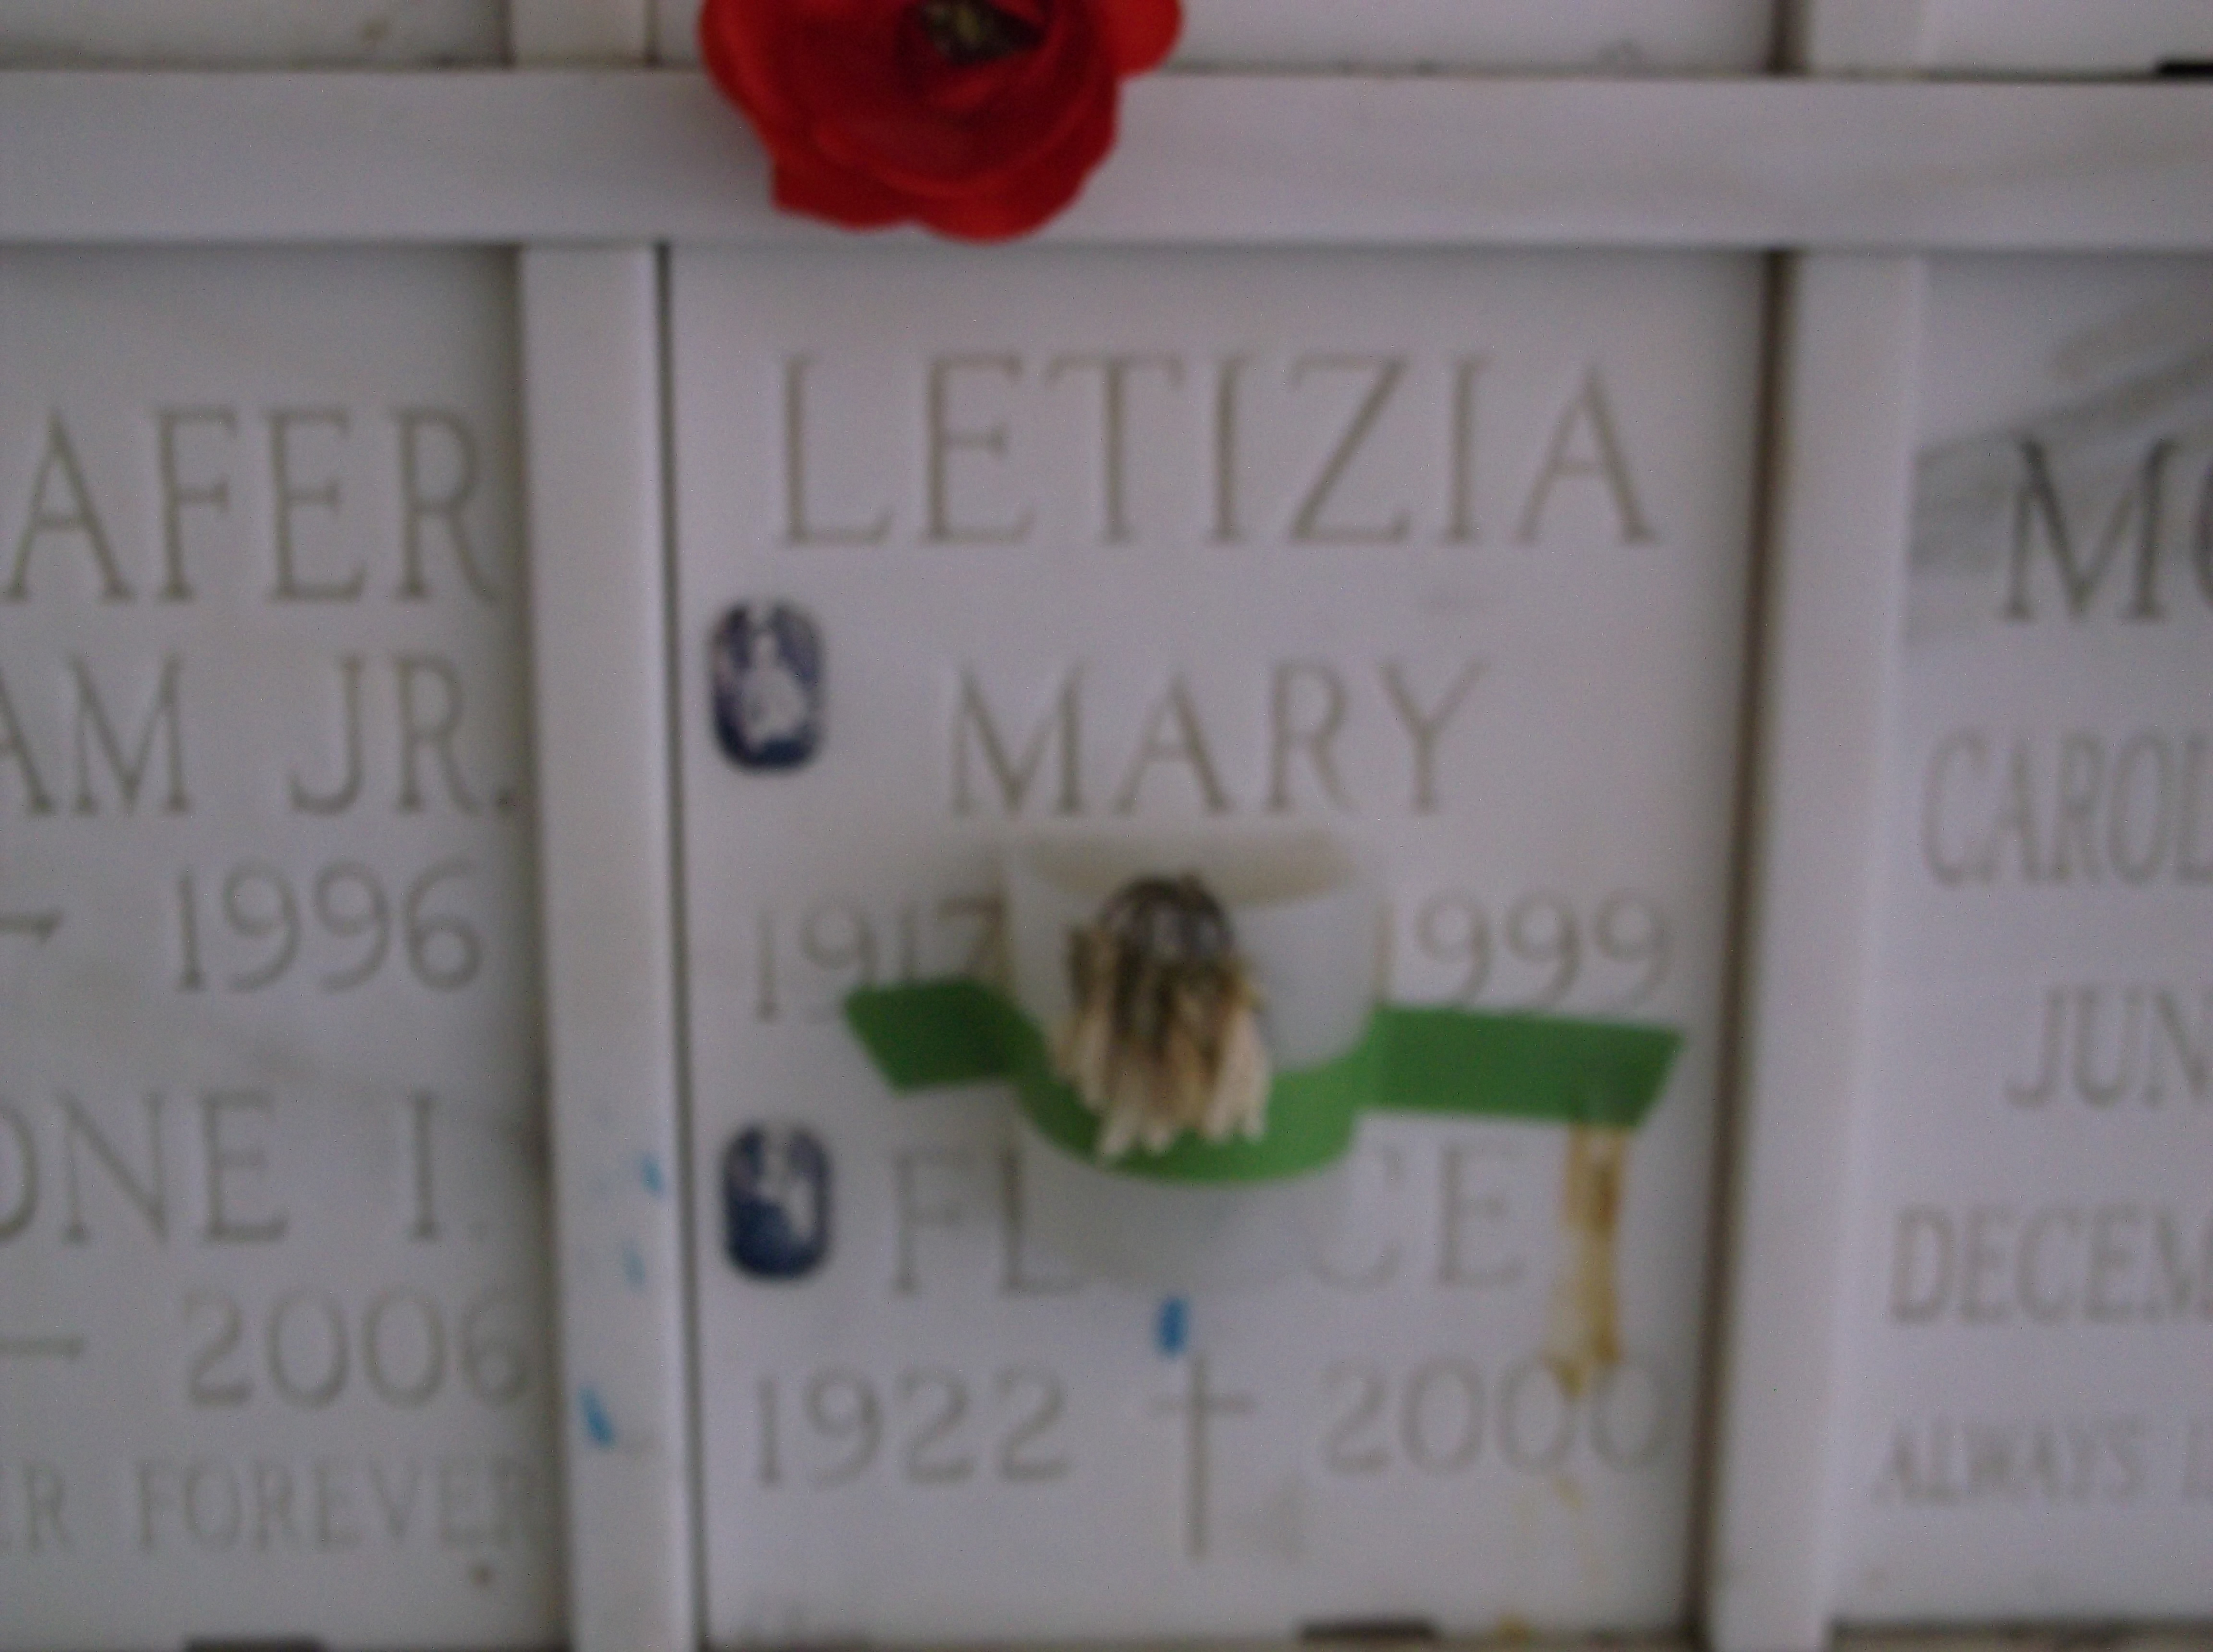 Mary Letizia